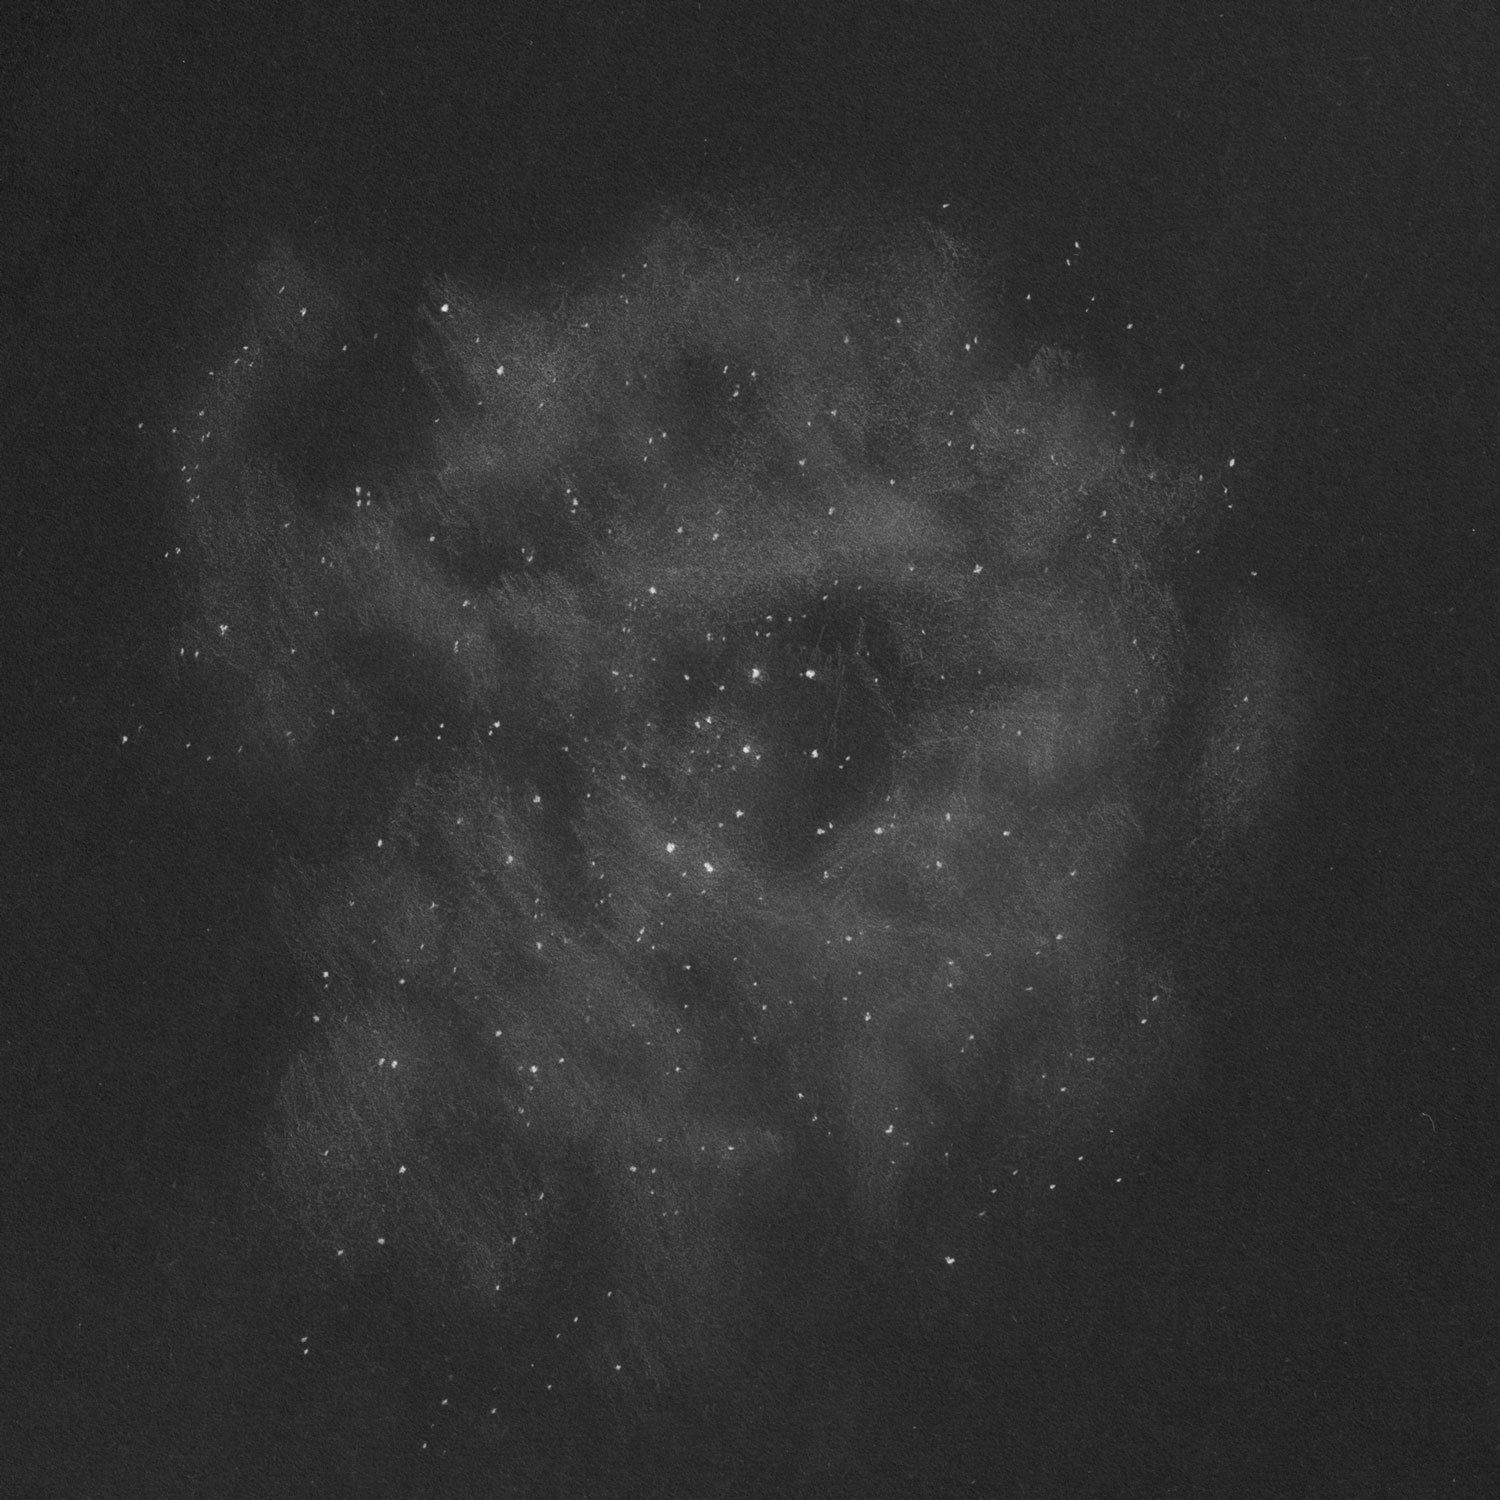 C49, C50ばら星雲 (NGC2237)のスケッチ